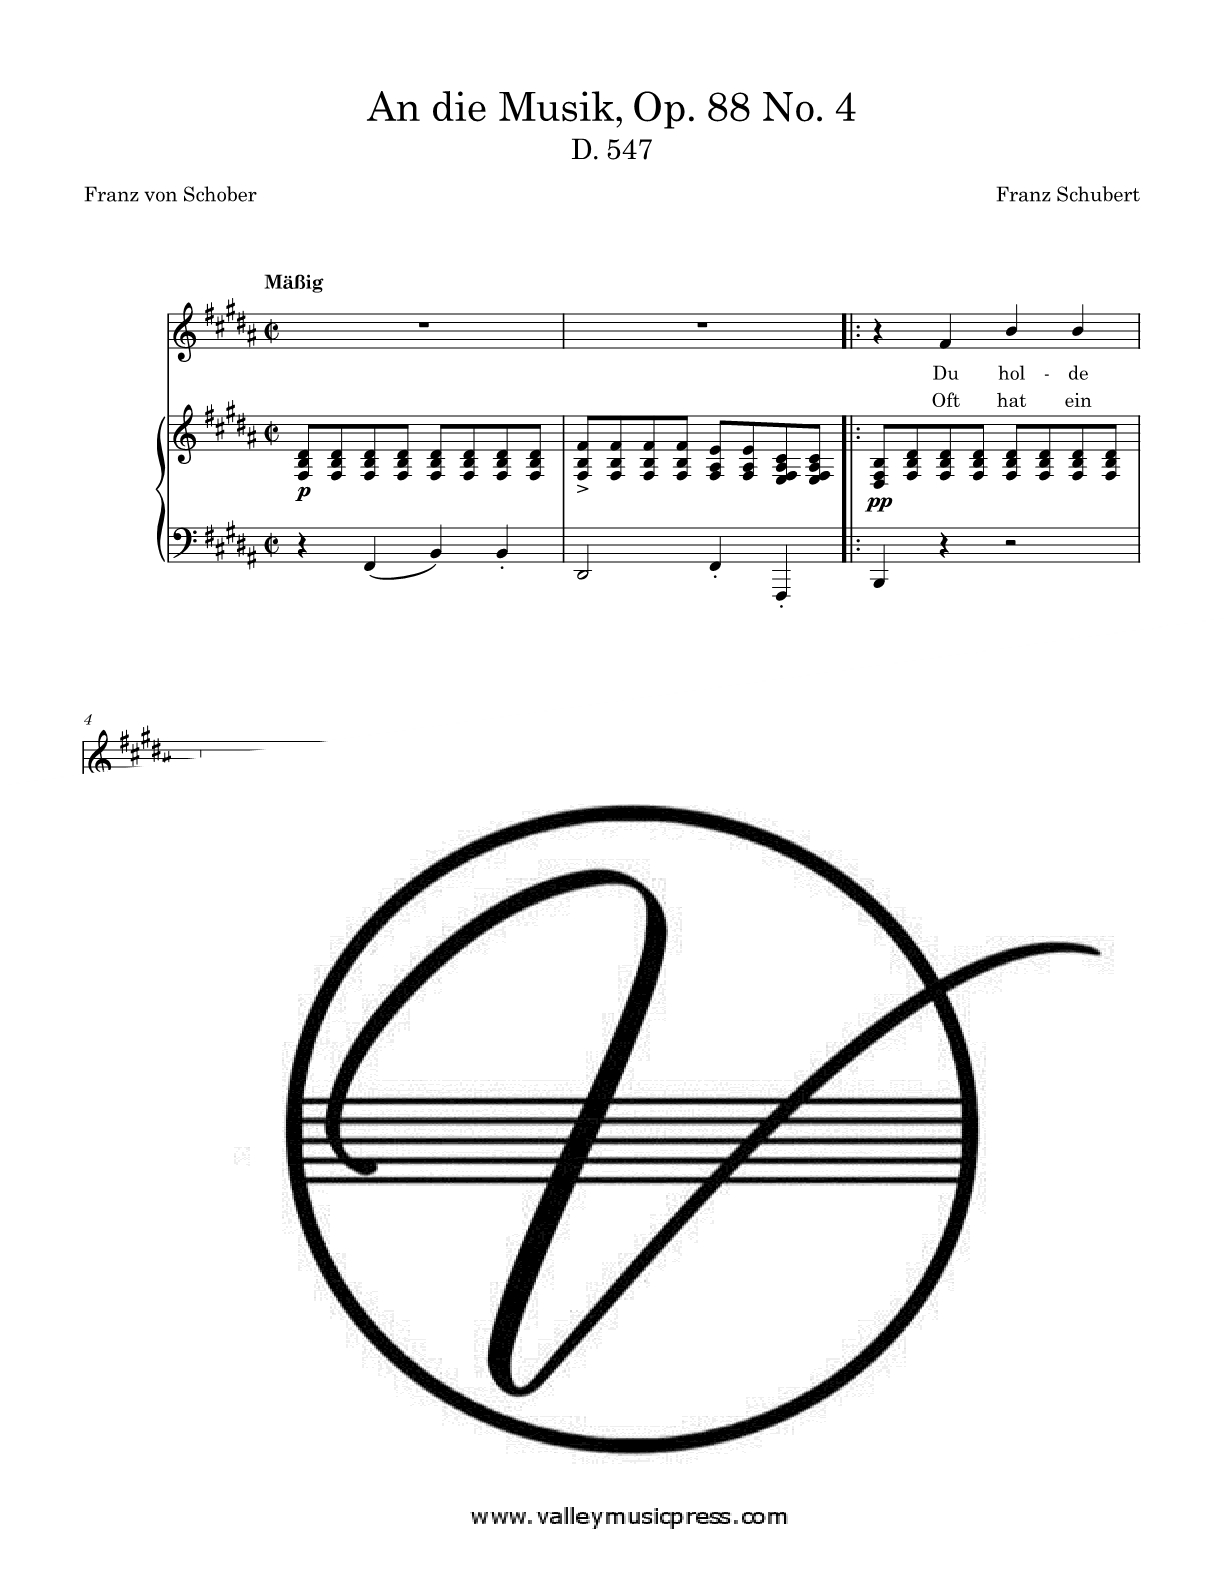 Schubert - An die Musik Op. 88 No. 4 D. 547 (Voice)